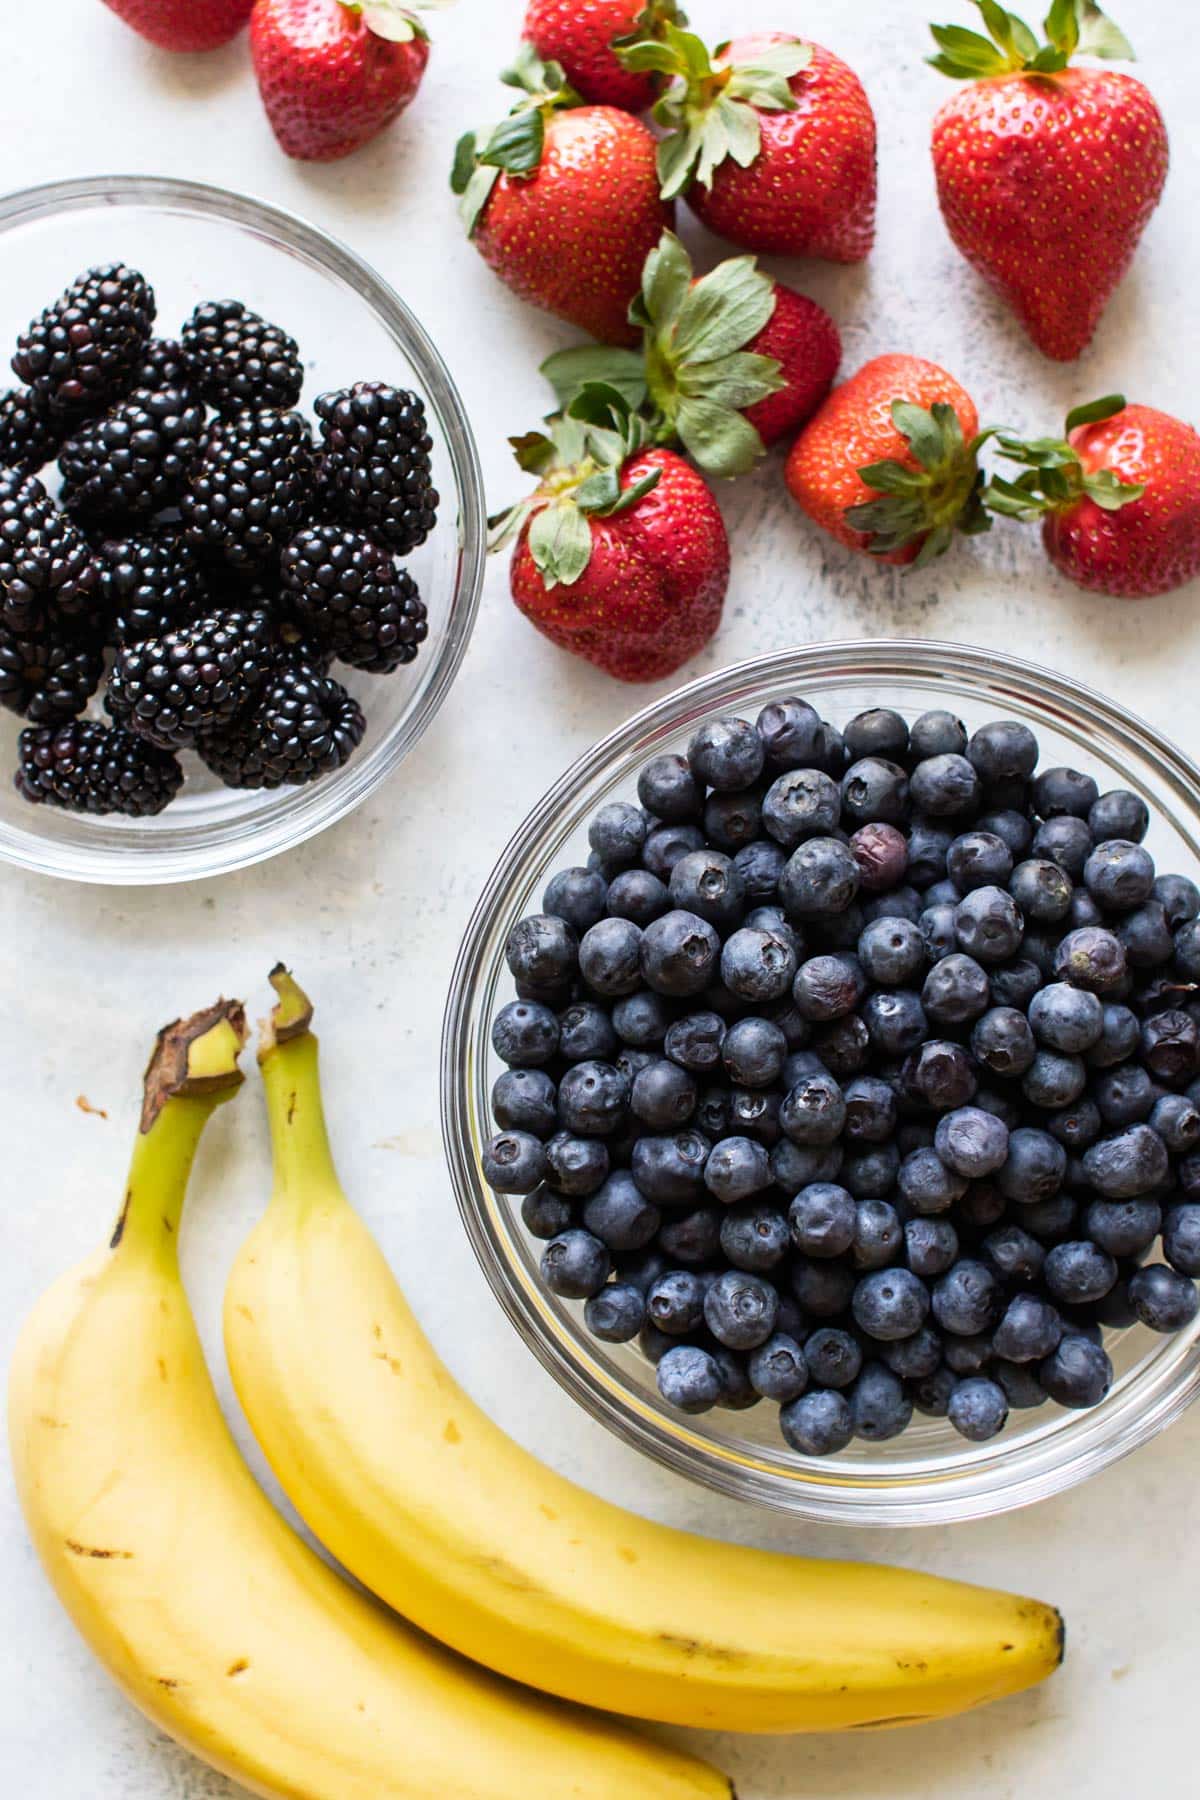 blackberries, strawberries, blueberries, and bananas.